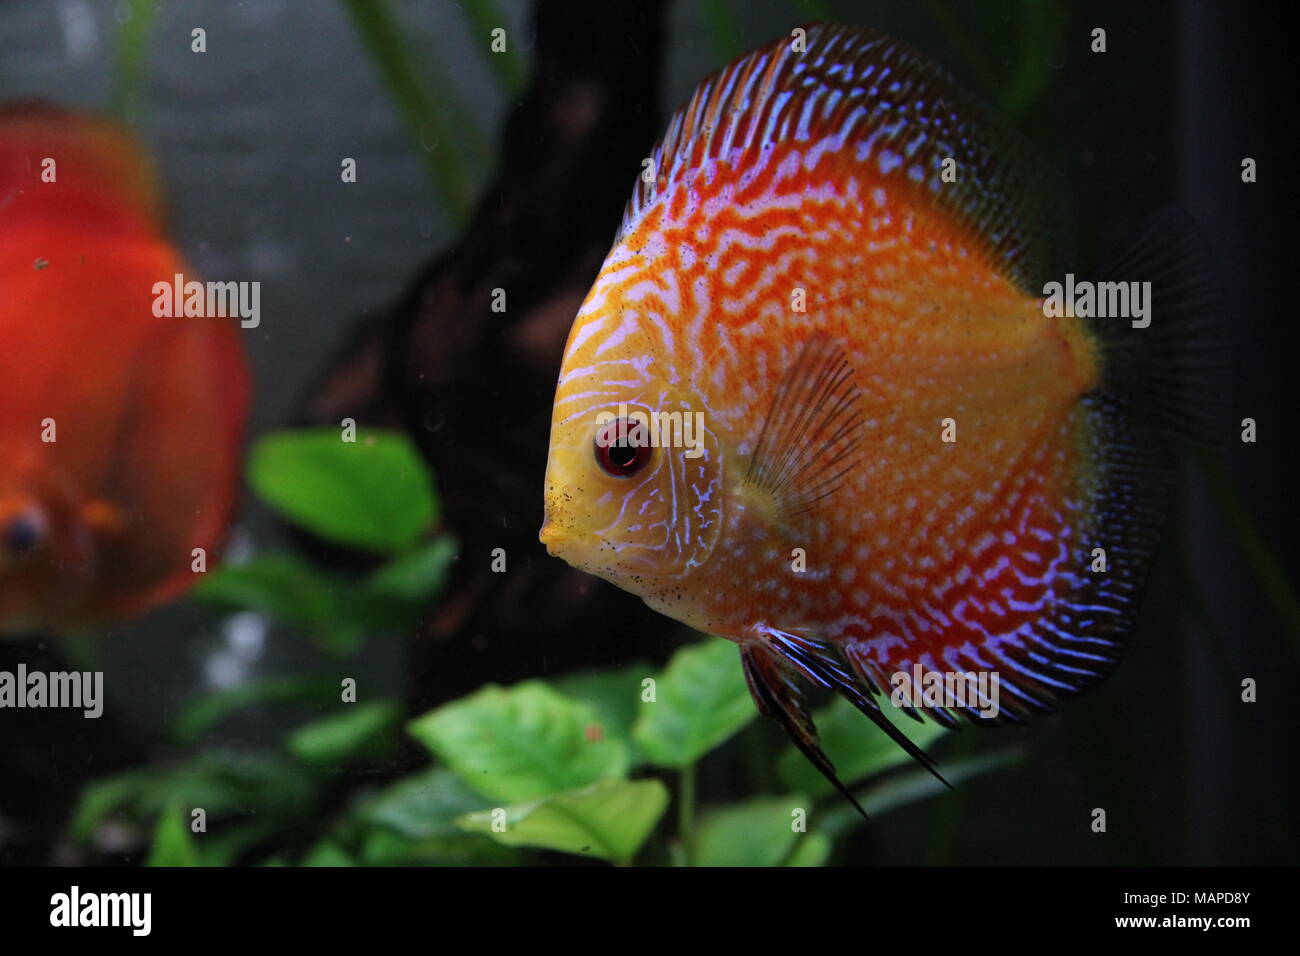 Un Aquarium Avec Des Poissons Tropicaux Multicolores Image stock - Image du  illuminé, coloré: 181595883